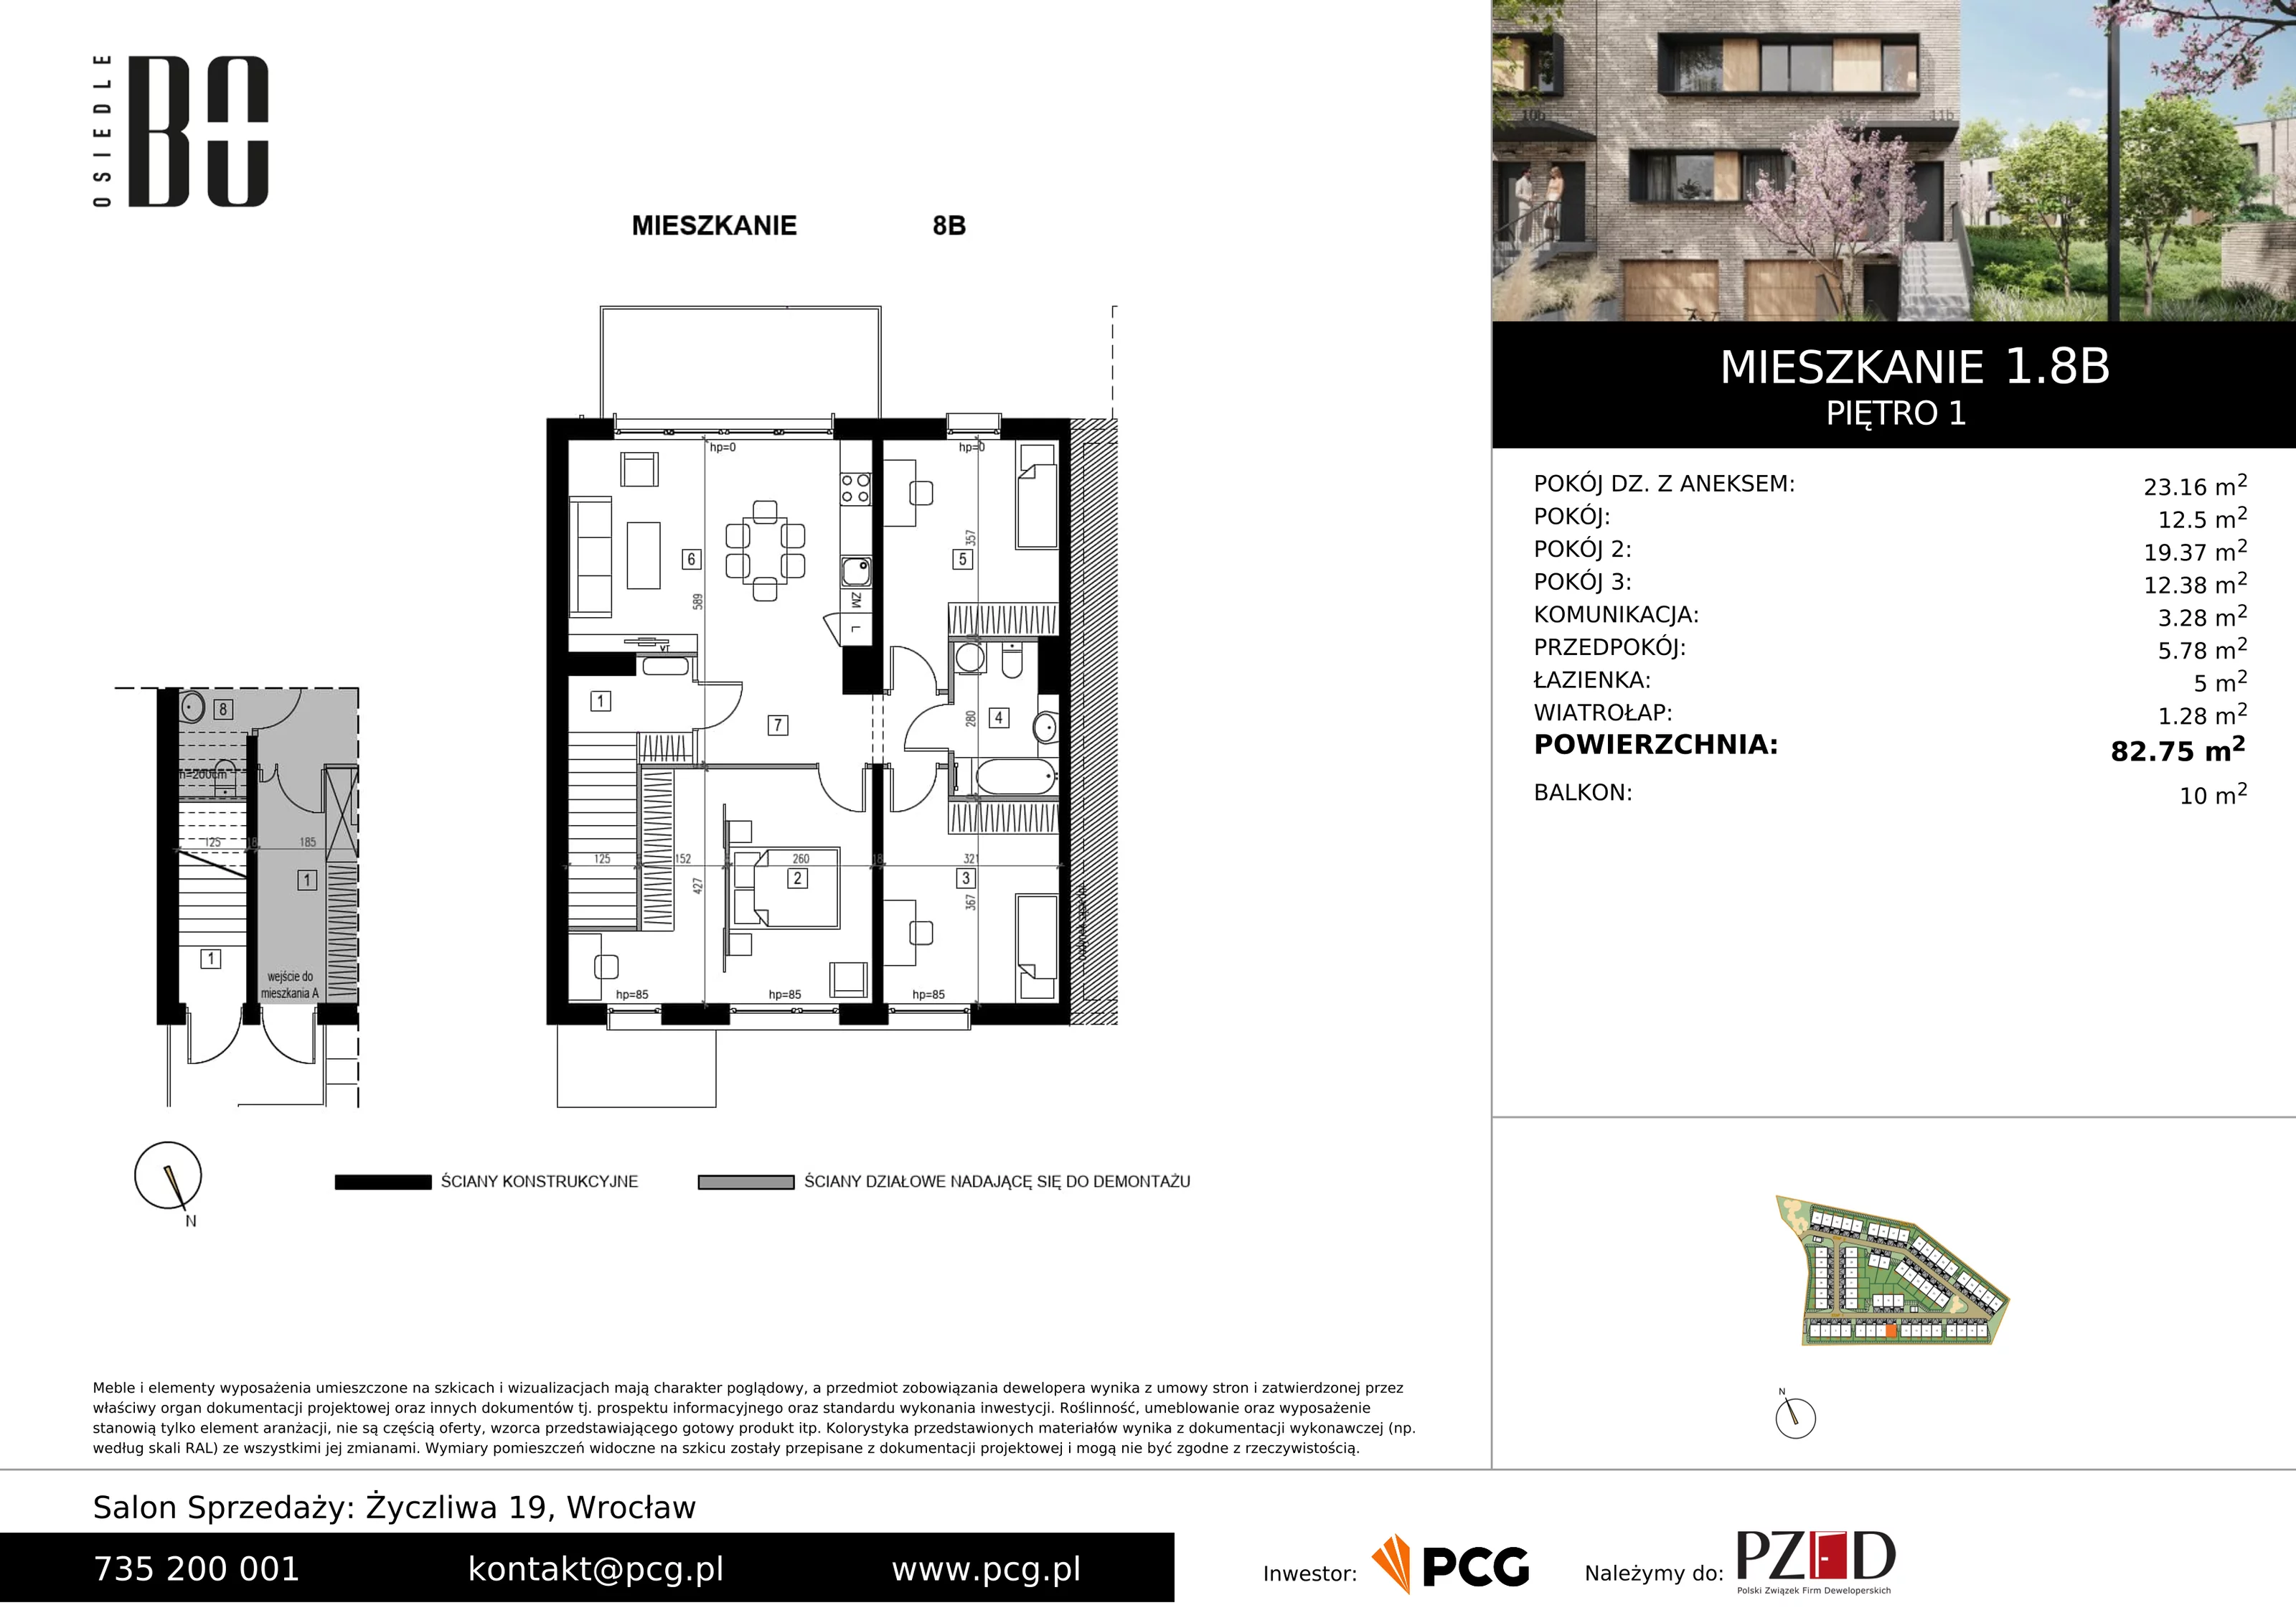 Apartament 82,75 m², piętro 1, oferta nr 1.8B, Osiedle BO, Wrocław, Kowale, ul. Bociana